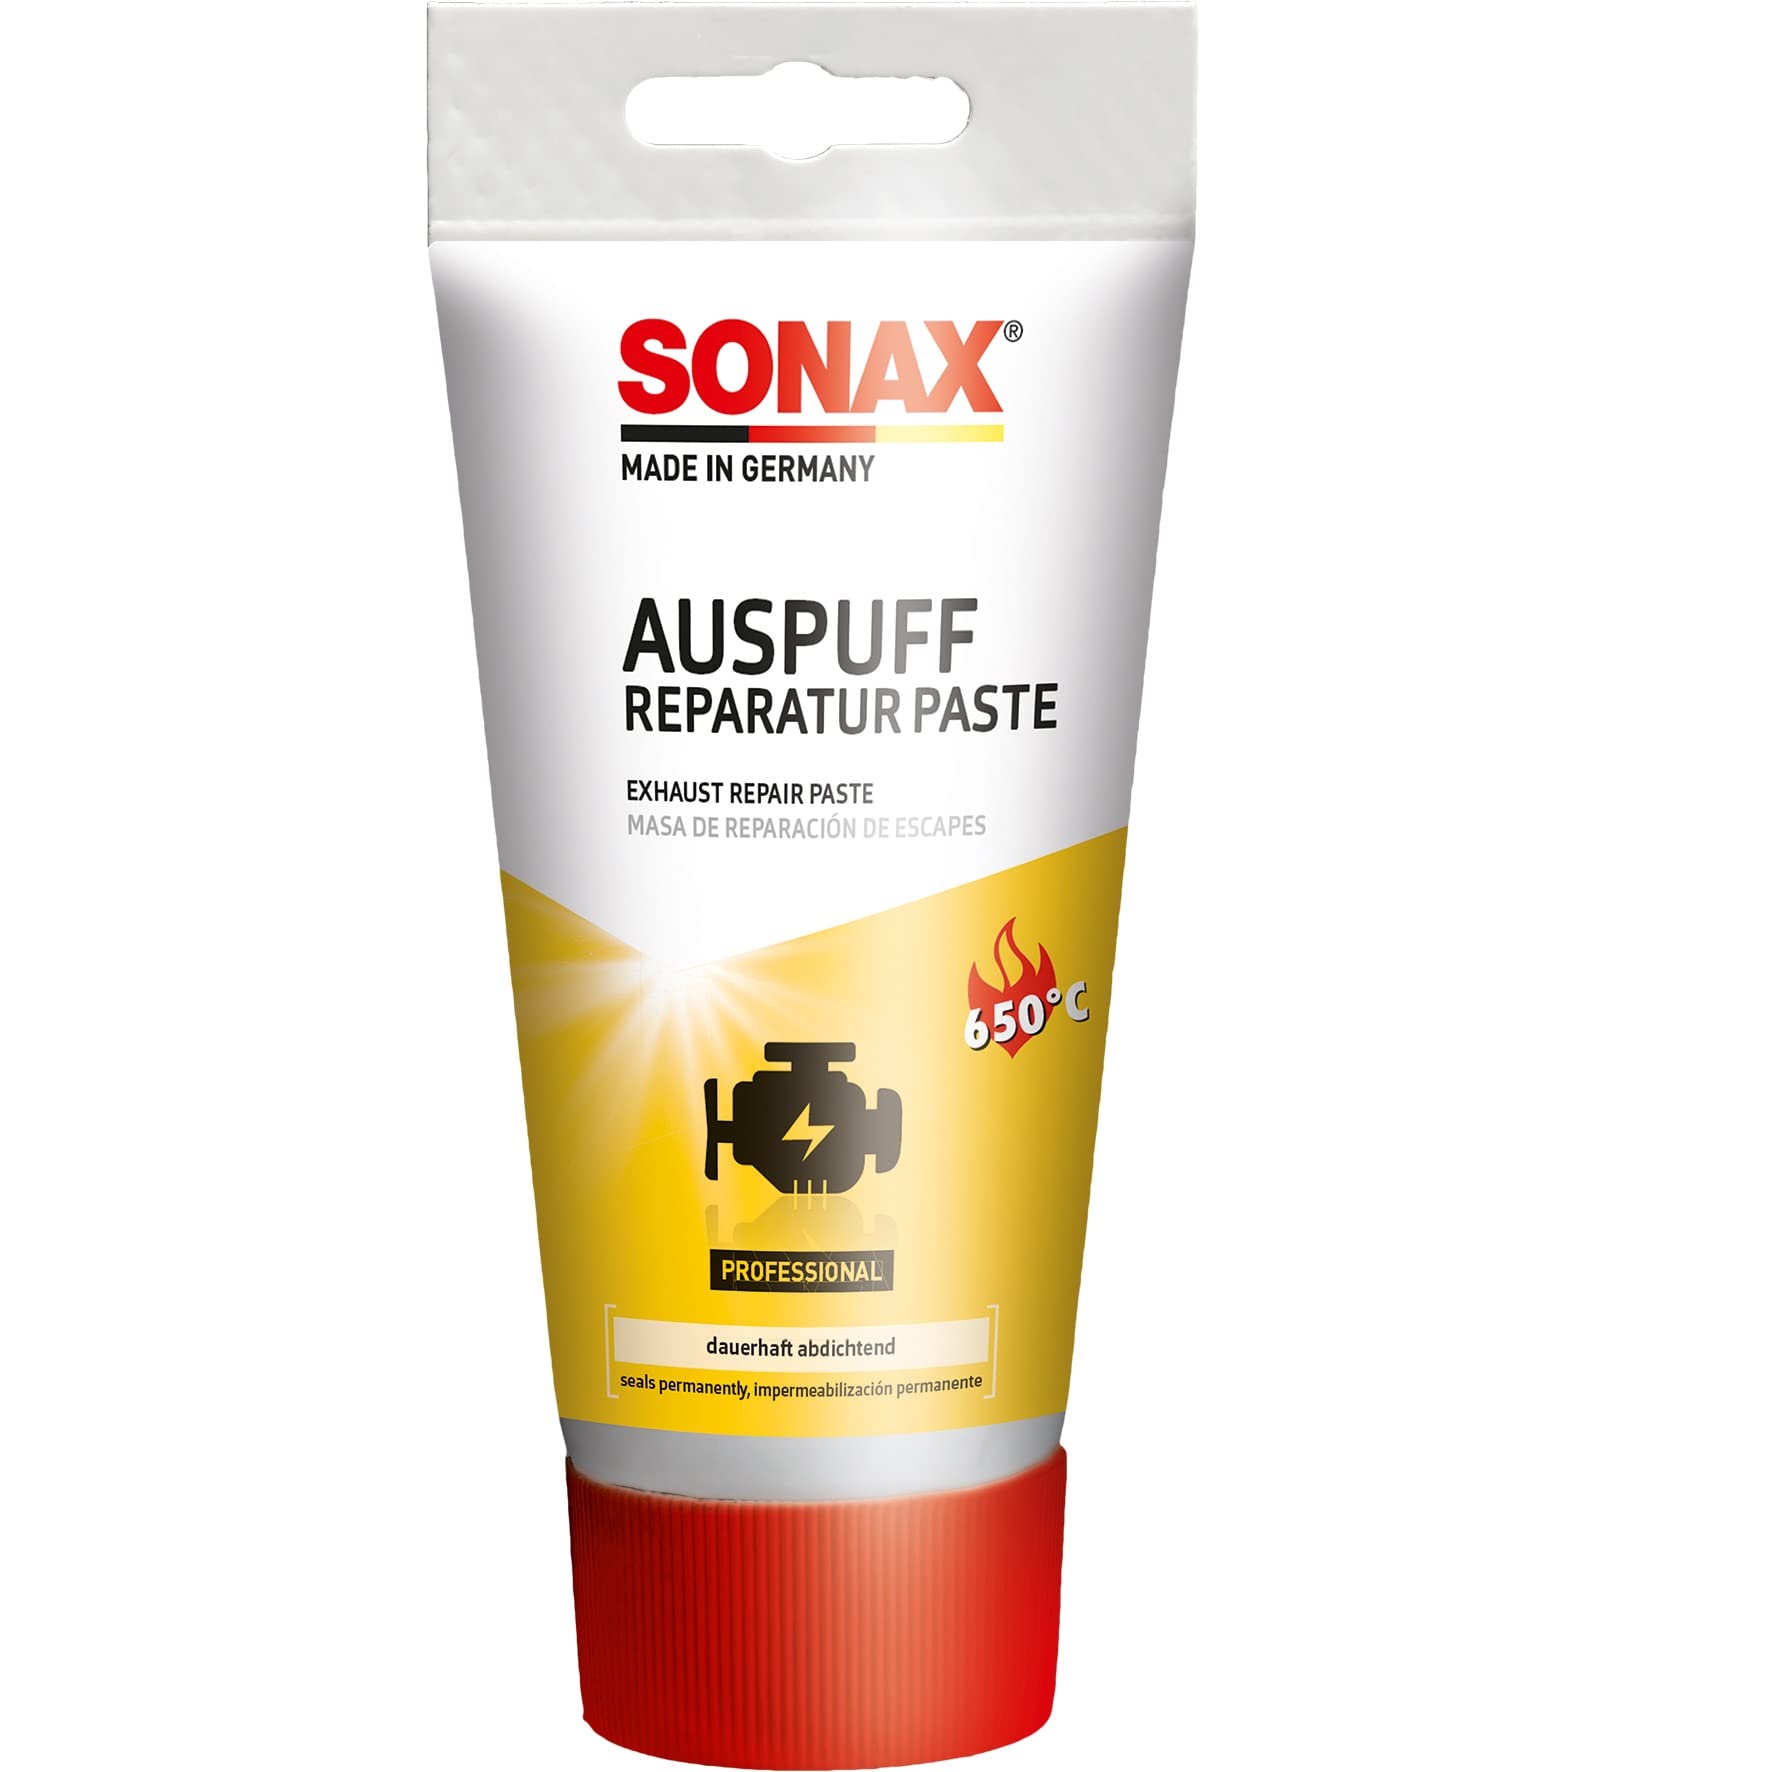 SONAX AuspuffReparaturPaste (200 g) Verschließt kleine Risse, Löcher und undichte Stellen dauerhaft, schnell und absolut gasdicht | Art-Nr. 05531000 von SONAX